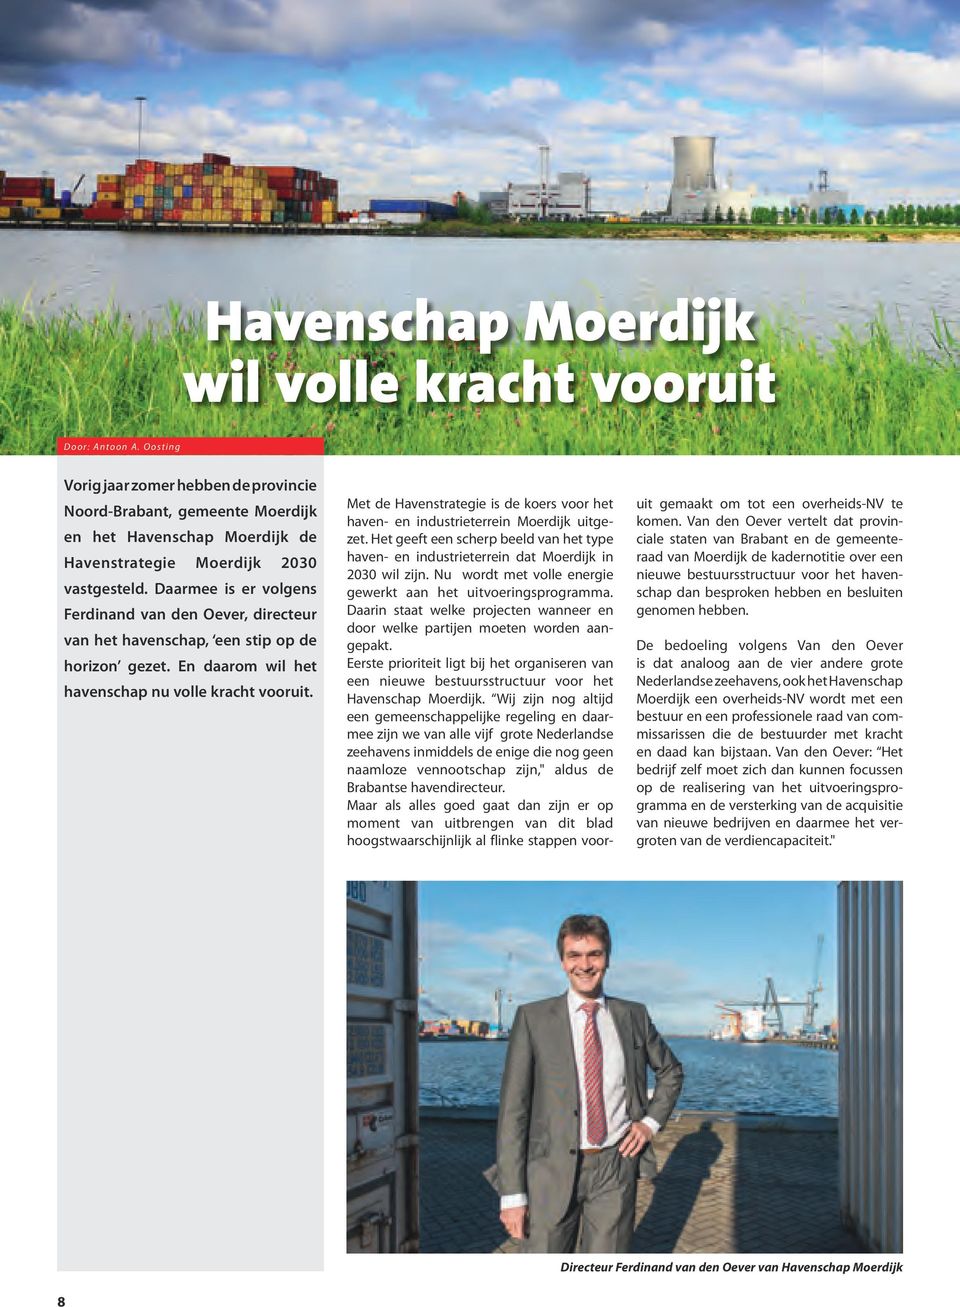 Daarmee is er volgens Ferdinand van den Oever, directeur van het havenschap, een stip op de horizon gezet. En daarom wil het havenschap nu volle kracht vooruit.